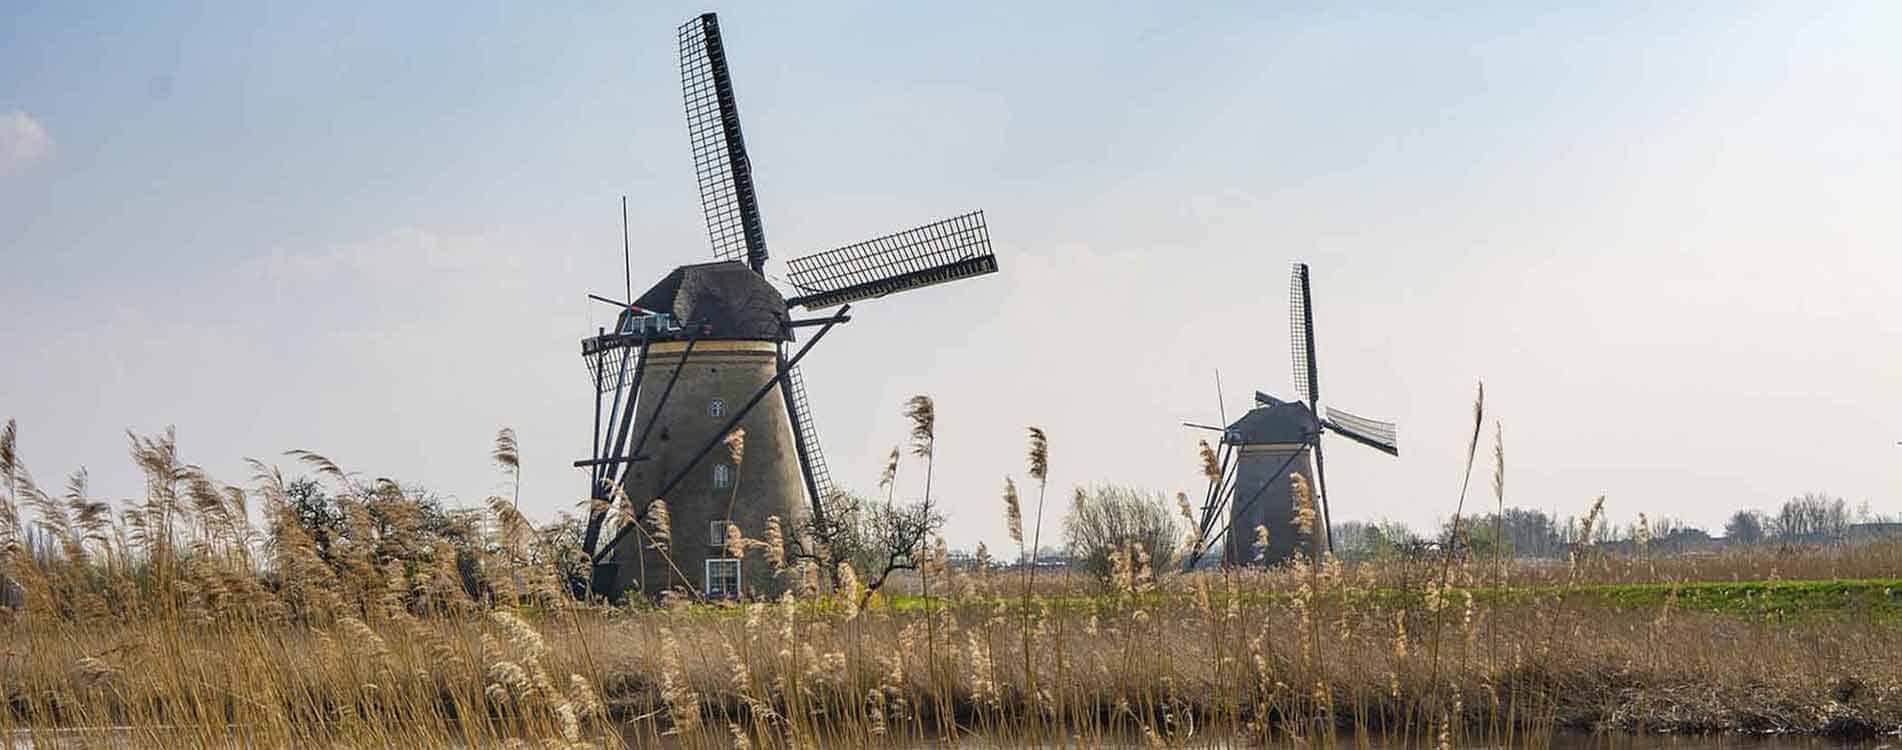 Windmühlen in Nordholland